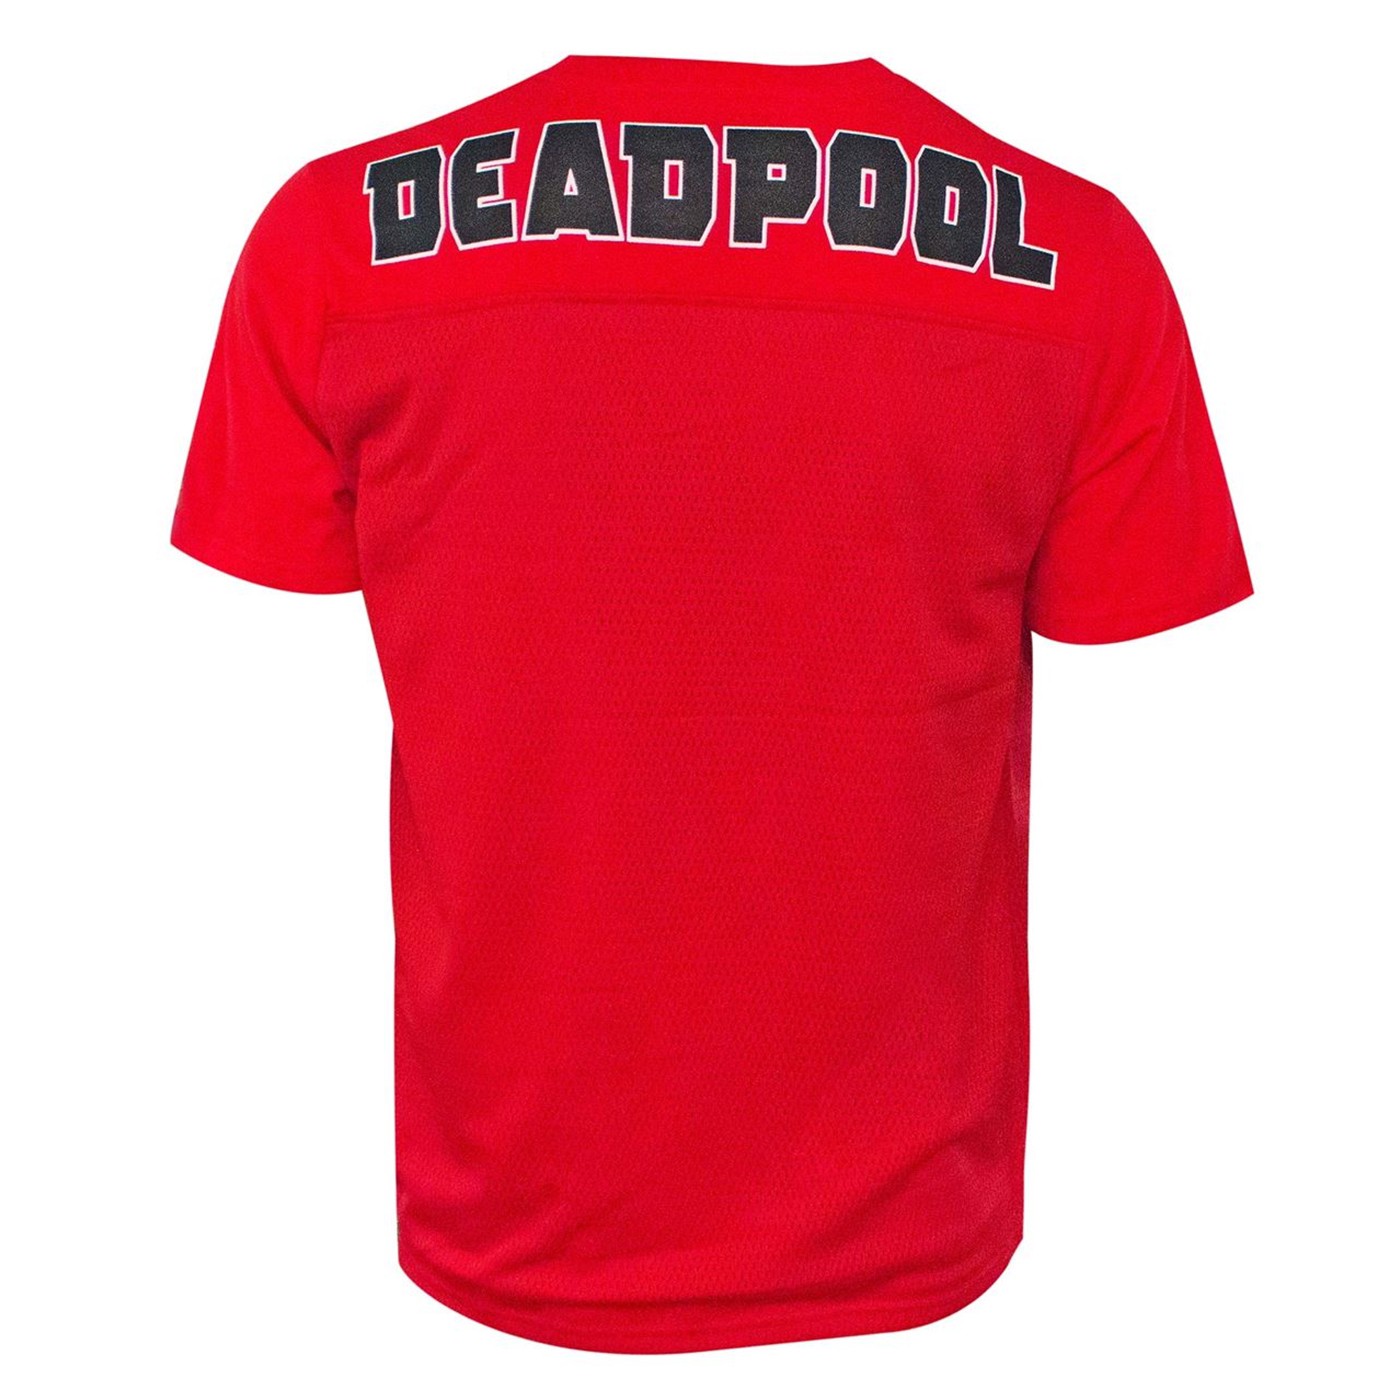 Deadpool Men's Red Football Jersey T-Shirt